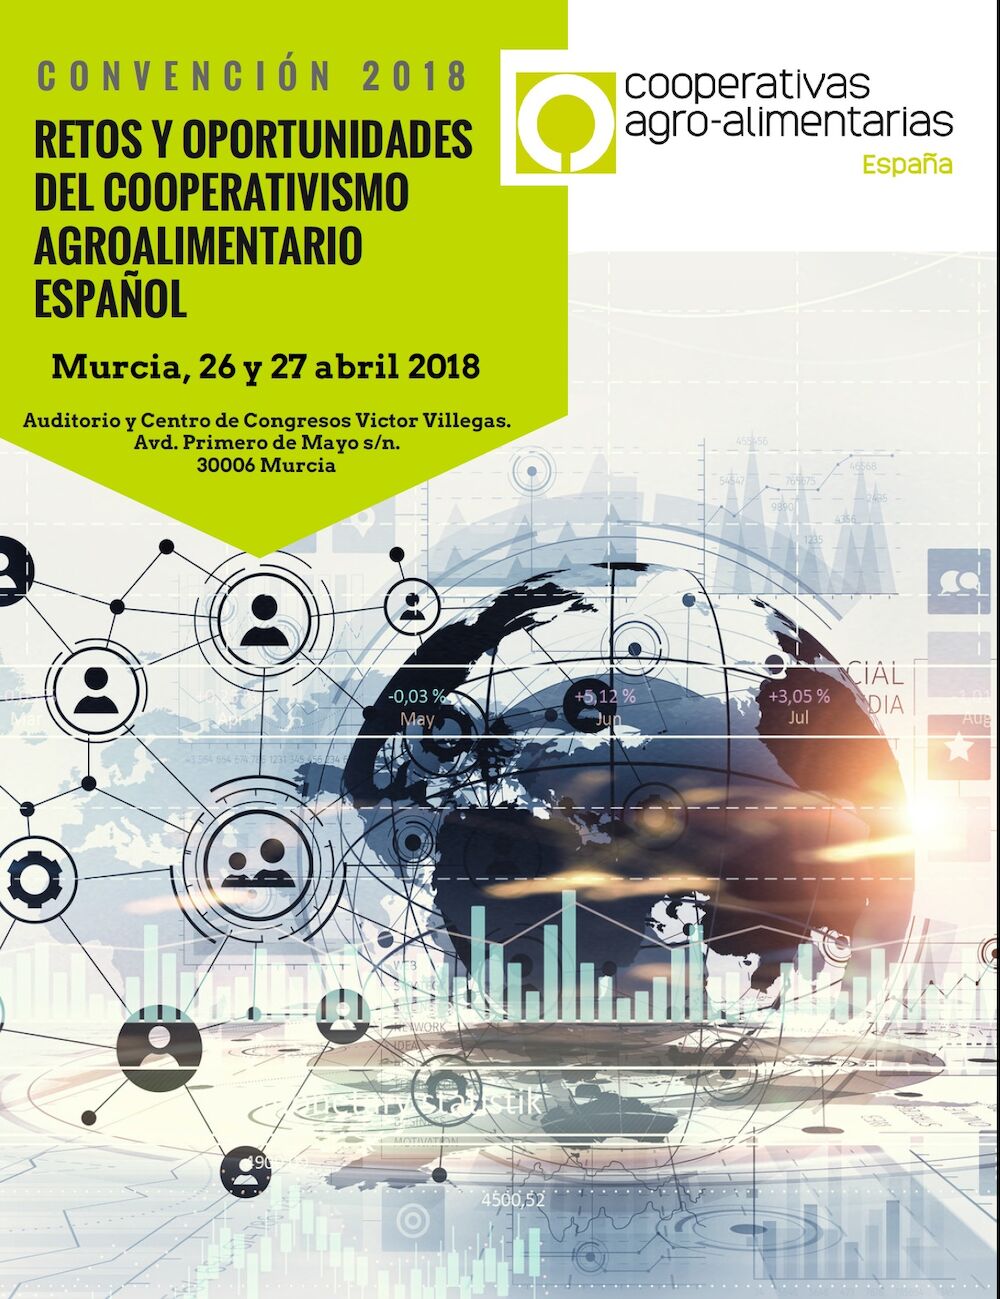 Los retos y oportunidades del cooperativismo español, a debate en una convención nacional de cooperativas